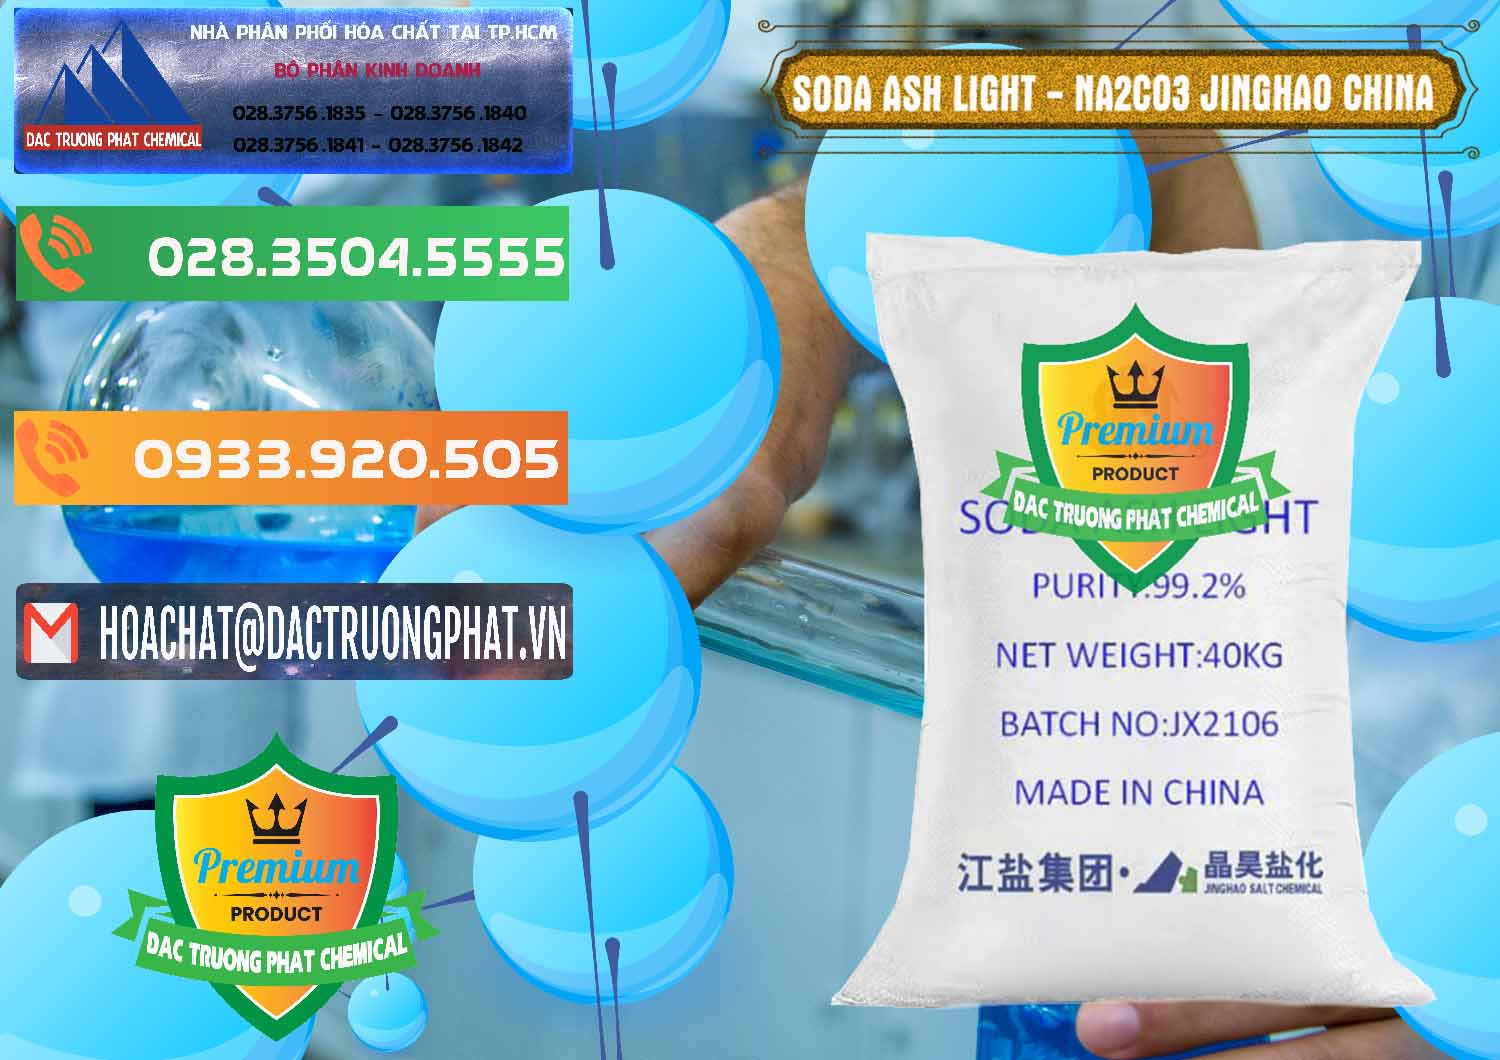 Cty kinh doanh & bán Soda Ash Light - NA2CO3 Jinghao Trung Quốc China - 0339 - Nhà cung cấp ( kinh doanh ) hóa chất tại TP.HCM - hoachatxulynuoc.com.vn